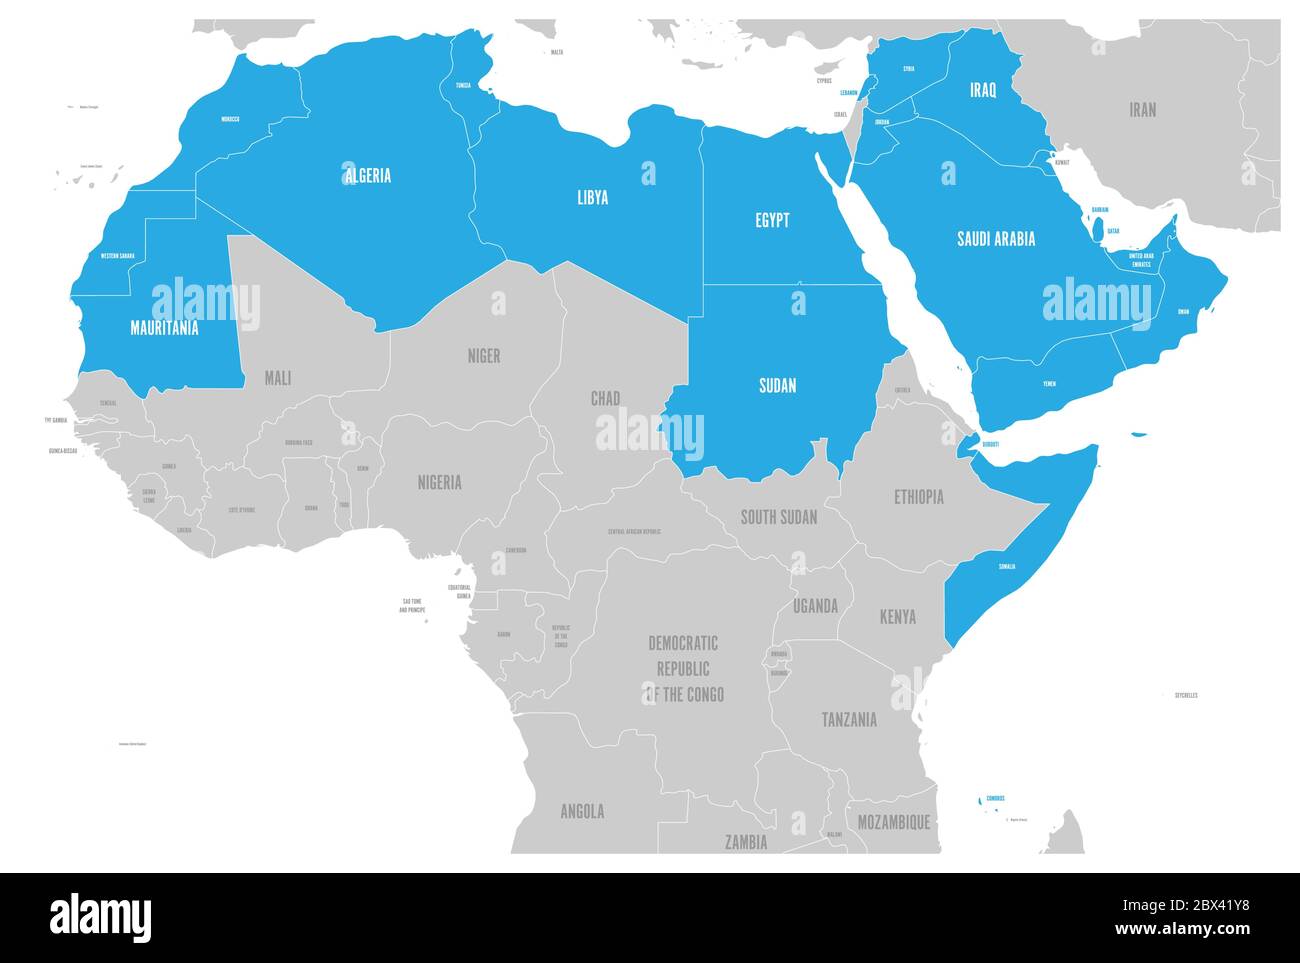 Mappa politica degli stati del mondo arabo con 22 paesi di lingua araba illuminati. Africa settentrionale e Medio Oriente. Illustrazione vettoriale. Illustrazione Vettoriale